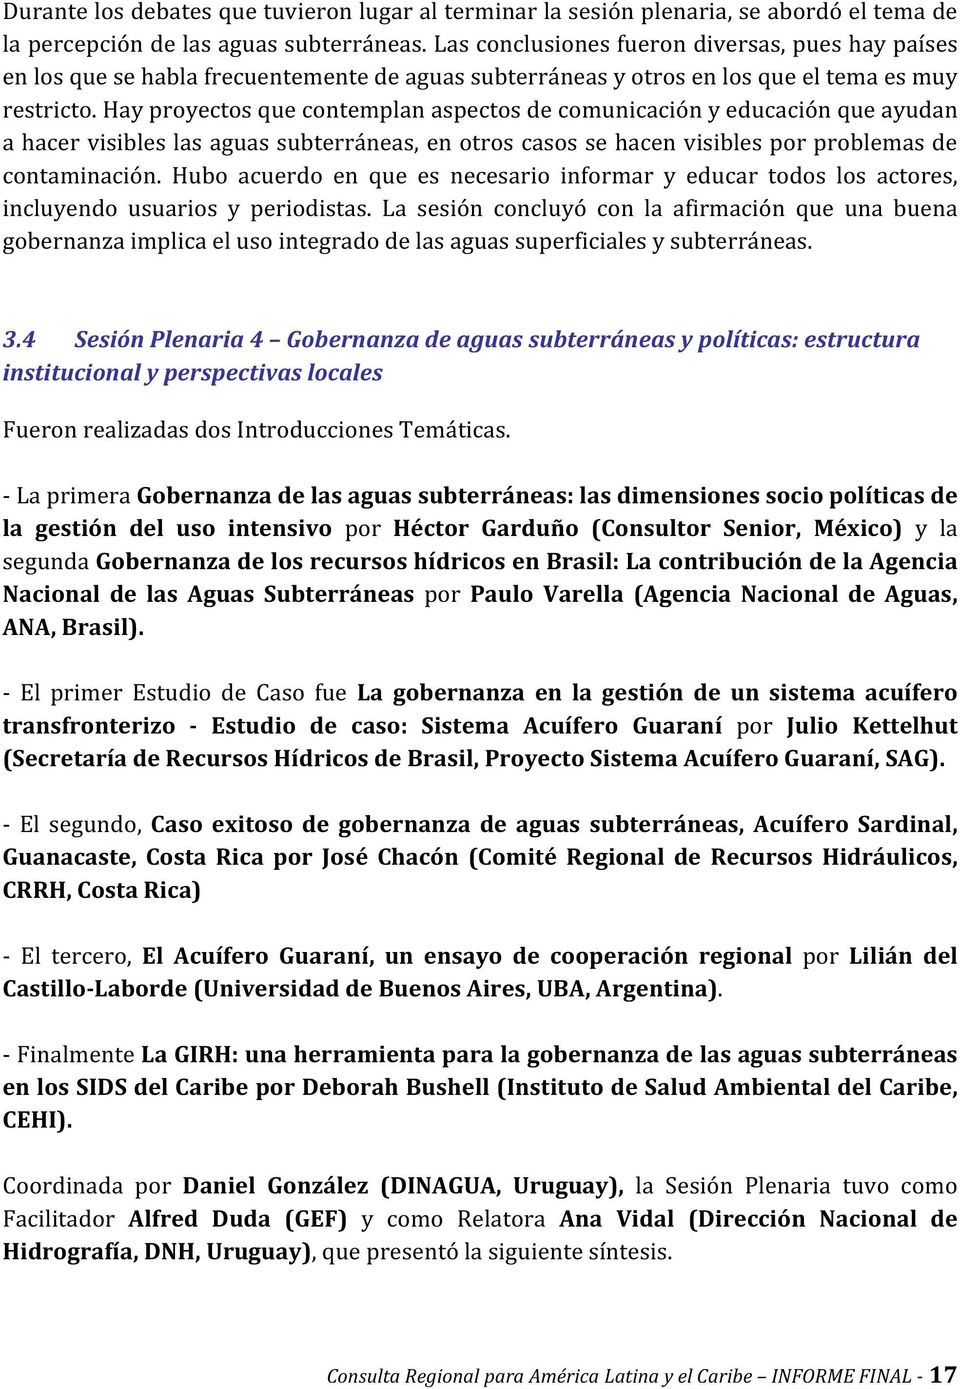 La gobernanza en la gestión de un sistema acuífero transfronterizo Estudio de caso: Sistema Acuífero Guaraní Julio Kettelhut (SecretaríadeRecursosHídricosdeBrasil,ProyectoSistemaAcuíferoGuaraní,SAG).